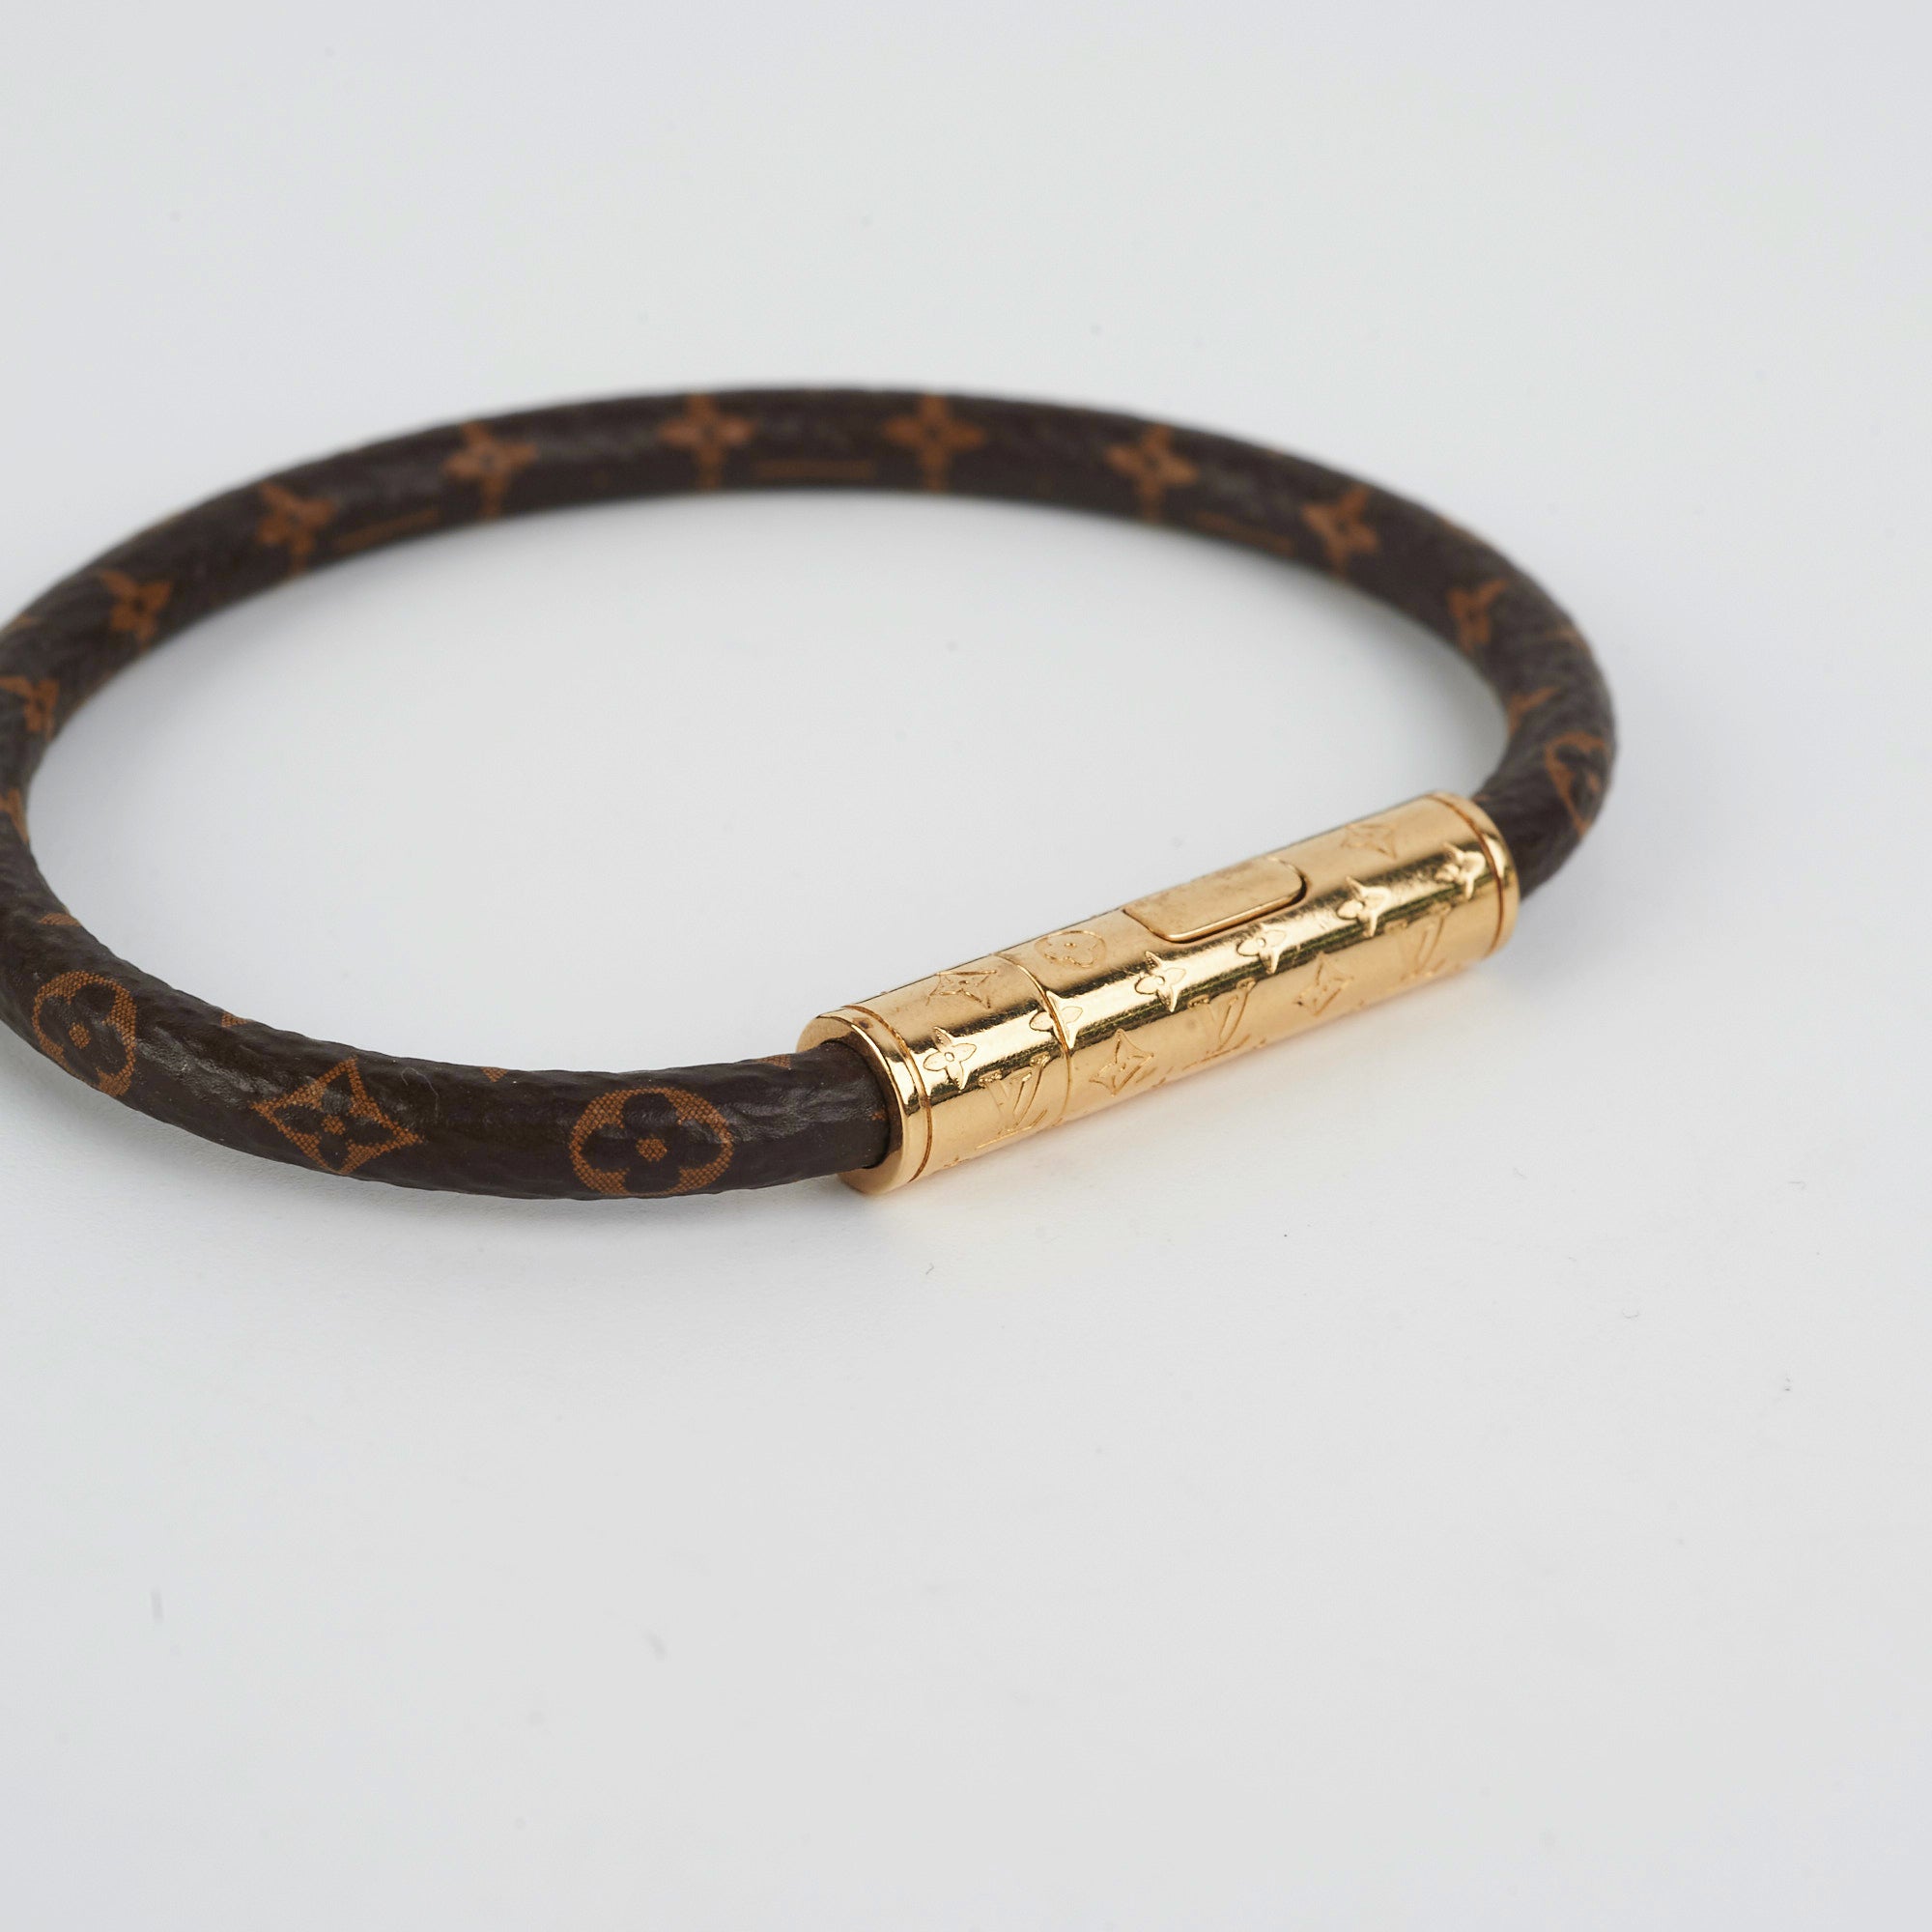 Louis Vuitton Monogram Confidential Bracelet Size 19 - THE PURSE